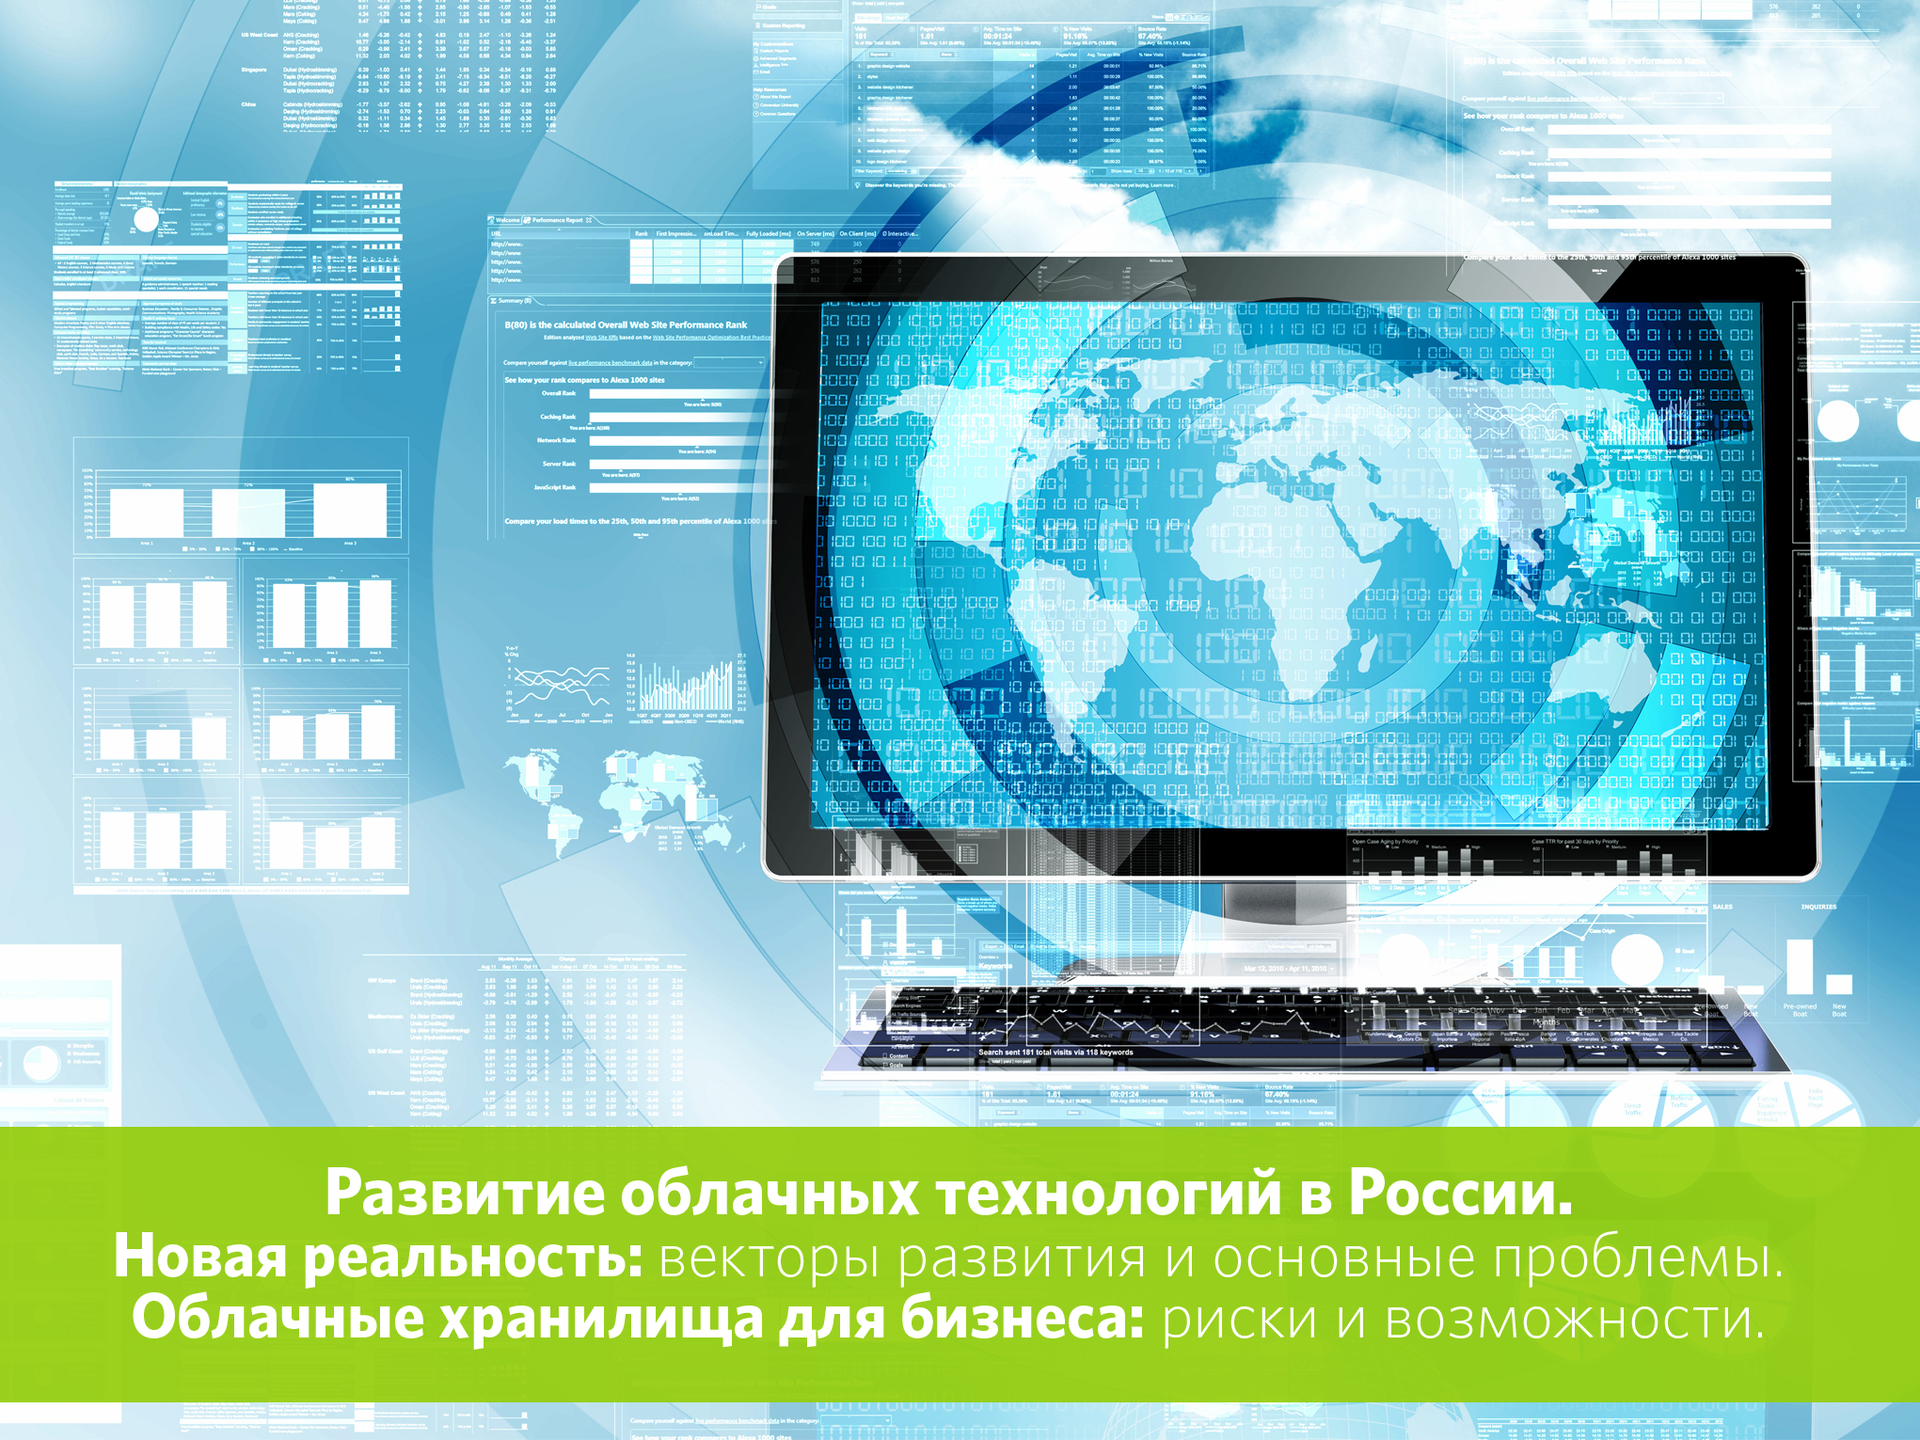 Развитие облачных технологий в России. Новая реальность: векторы развития и основные проблемы - 1